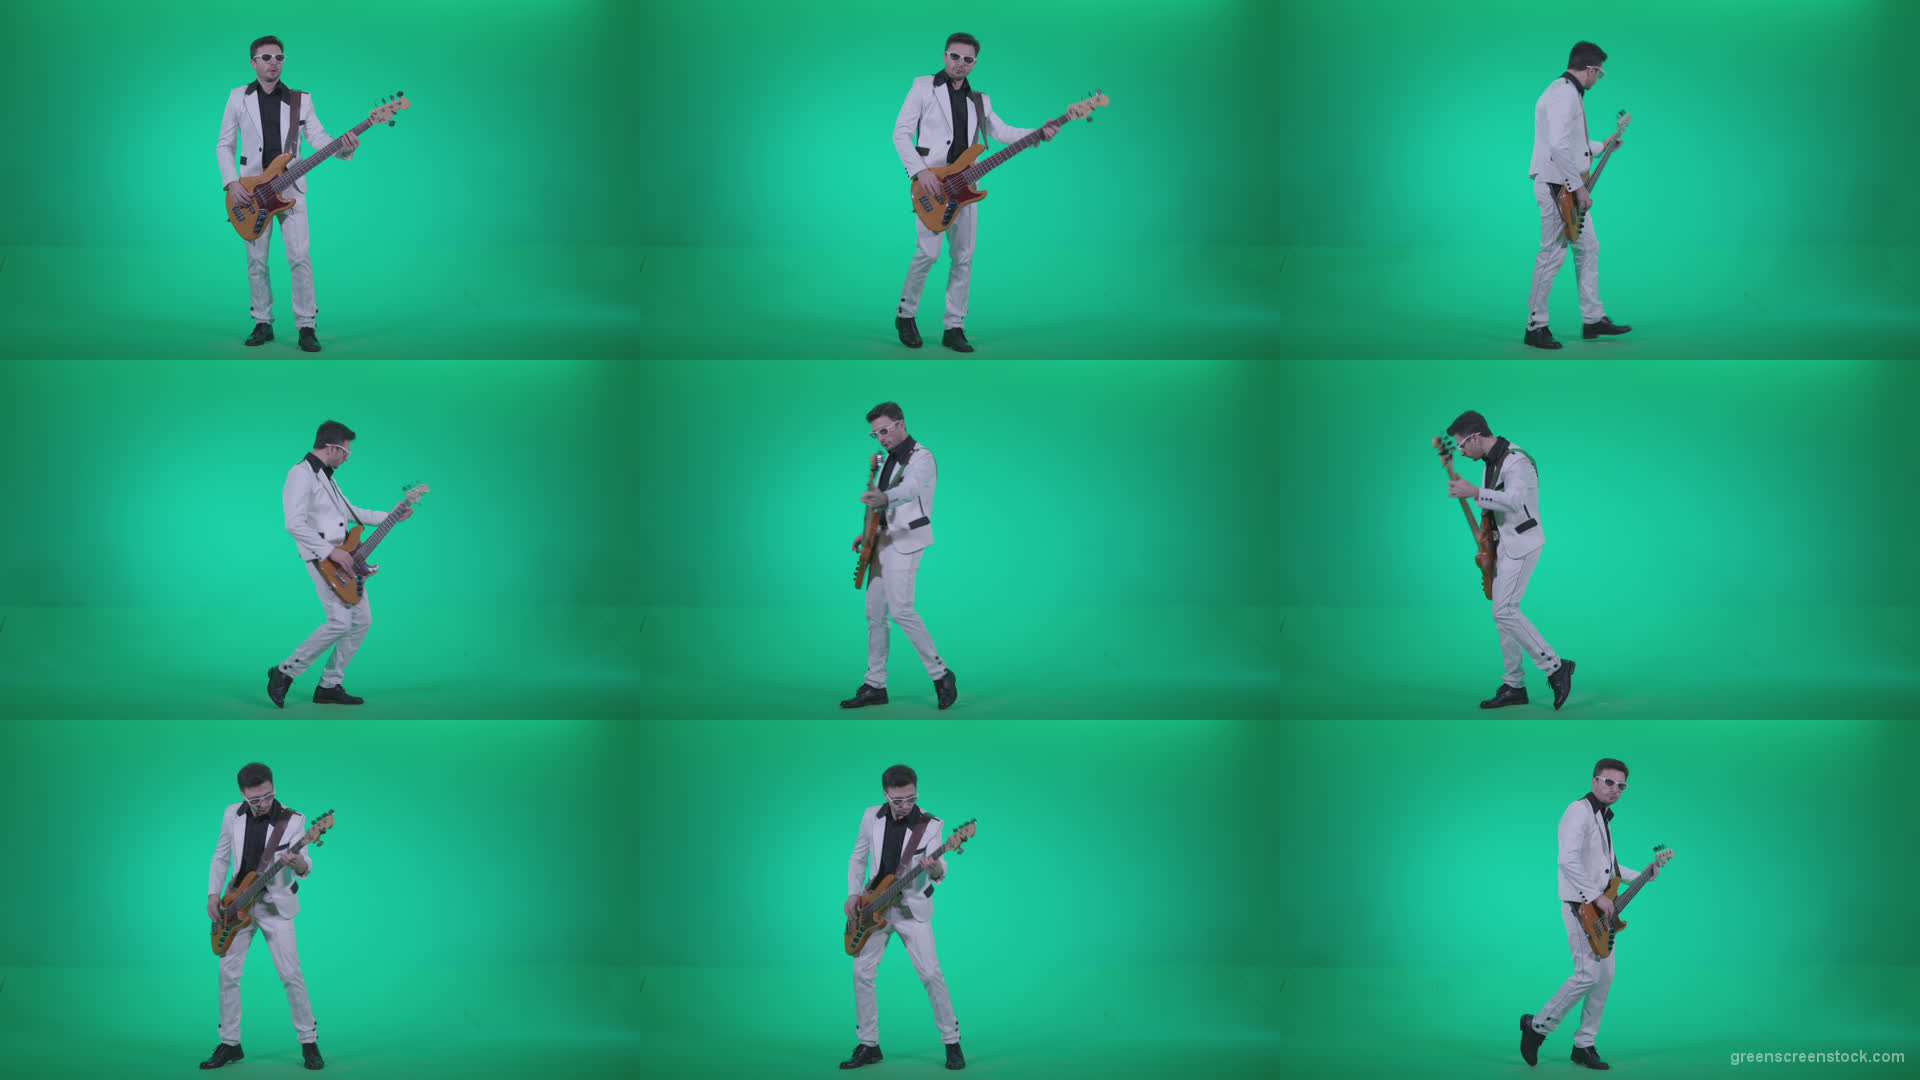 Bass-Jazz-Performer-3 Green Screen Stock